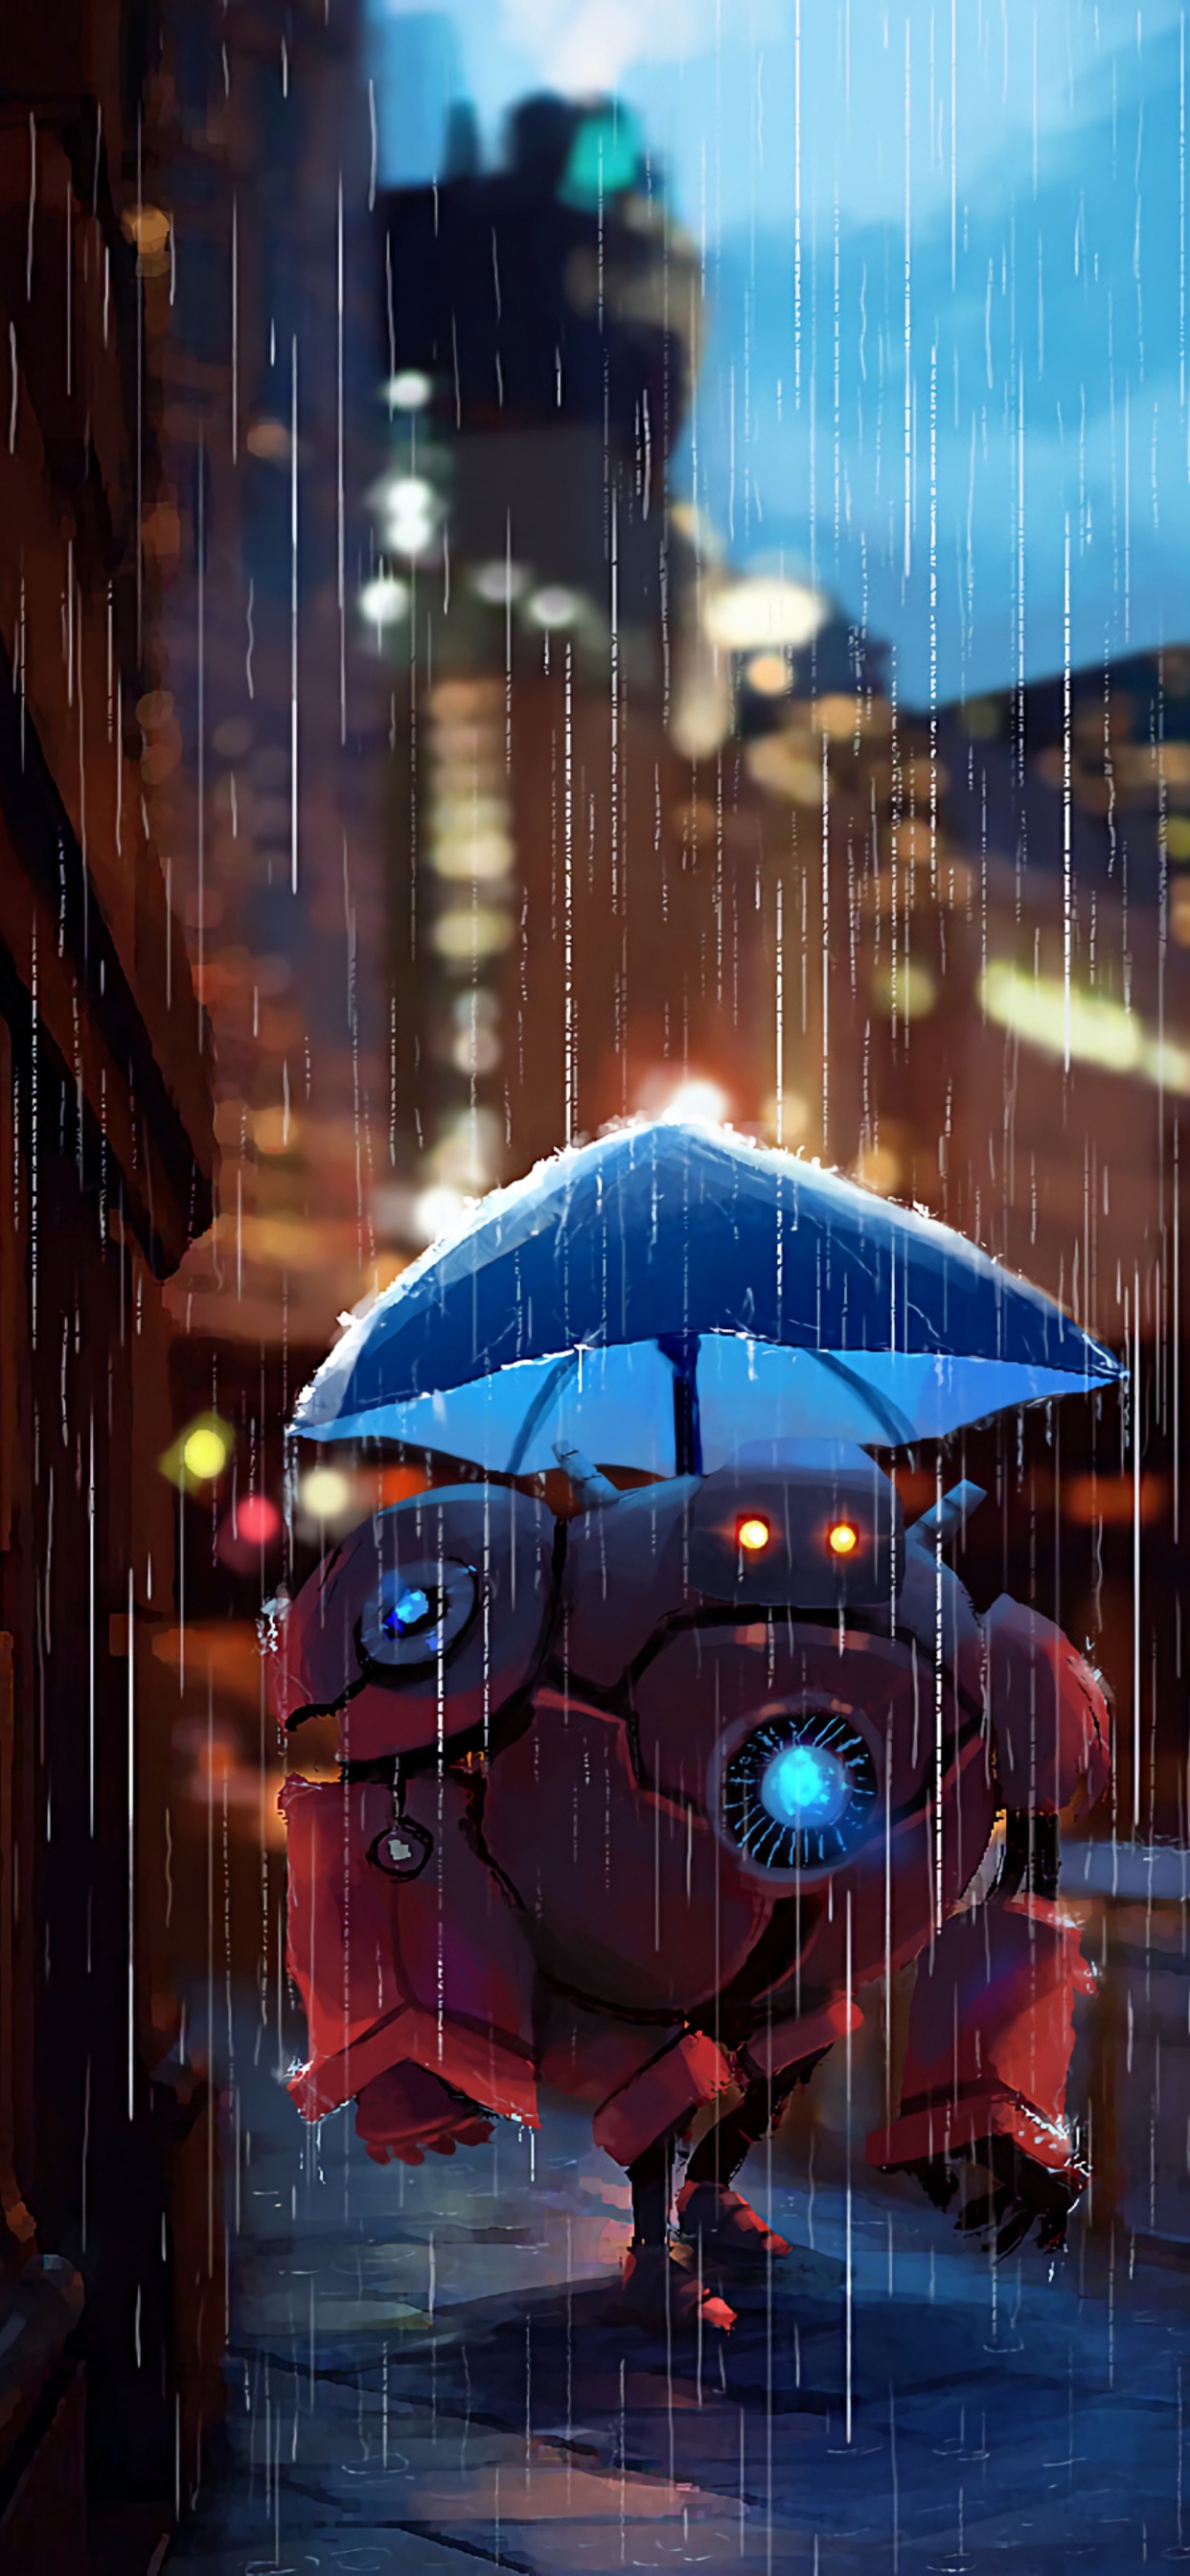 Parapluie Bleu Dans la Ville Pendant la Nuit. Wallpaper in 1242x2688 Resolution